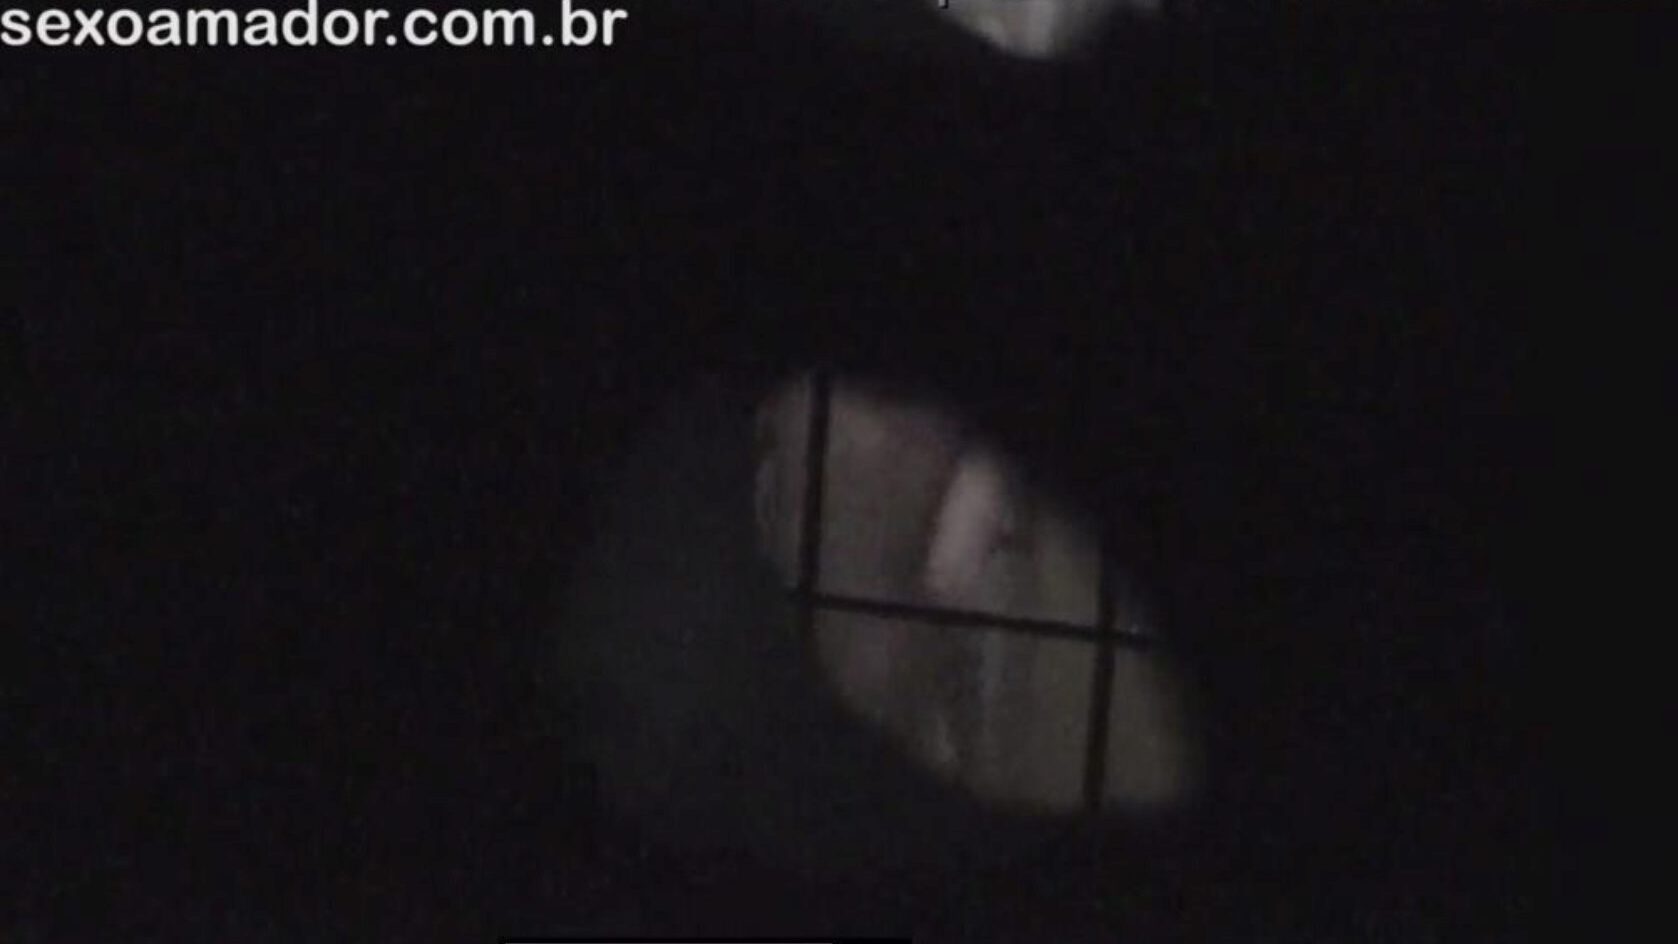 rubia es filmada en secreto por vecino voyeur encubierta detrás de ladrillos huecos